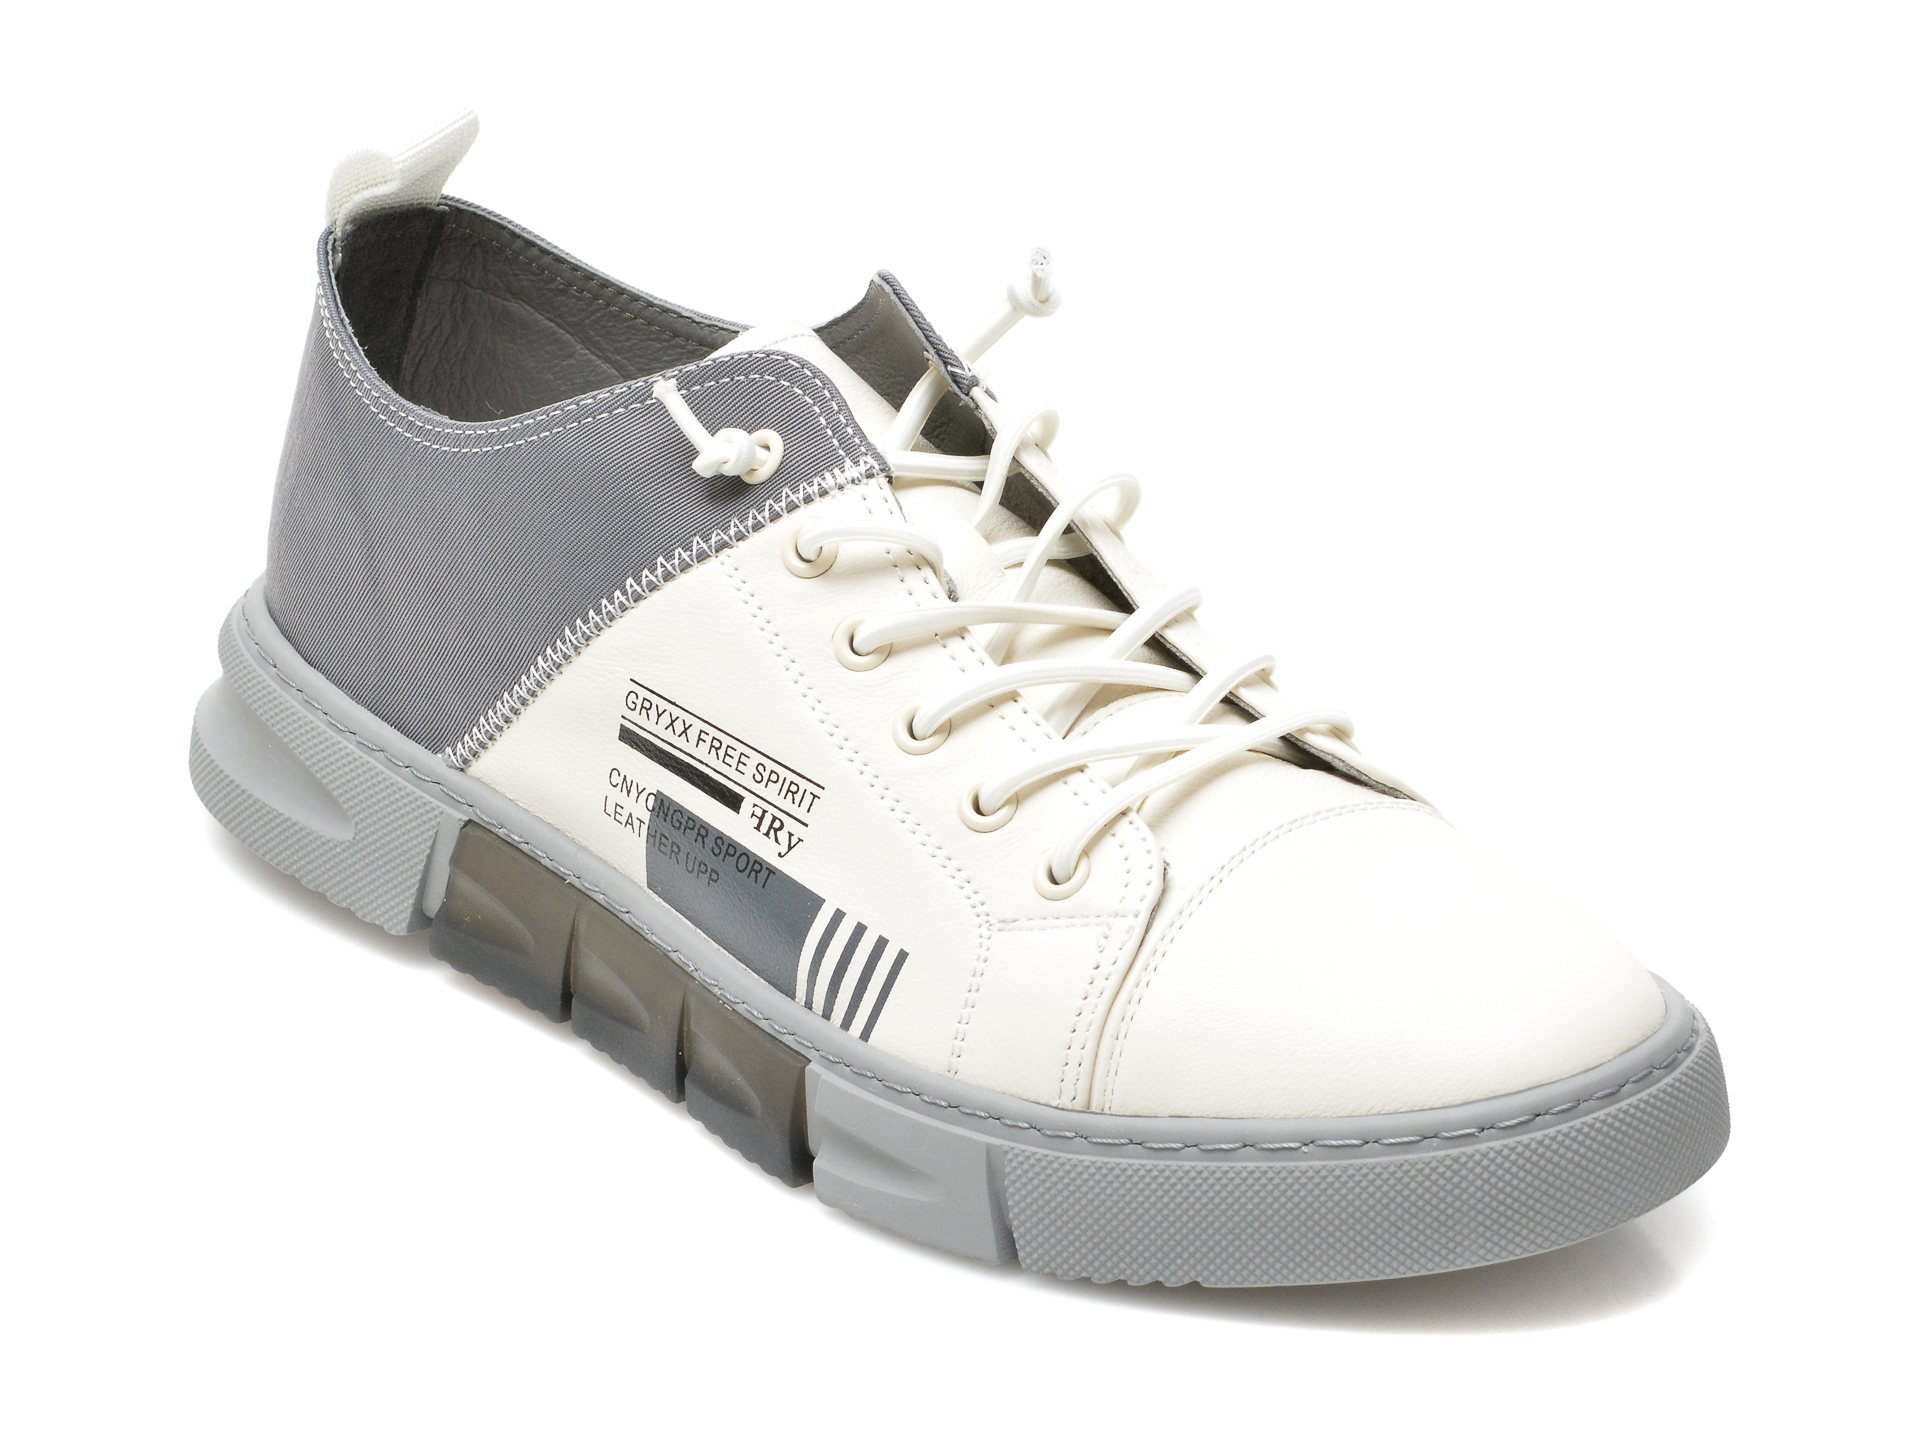 Pantofi GRYXX albi, 79871, din piele naturala Gryxx imagine 2022 13clothing.ro